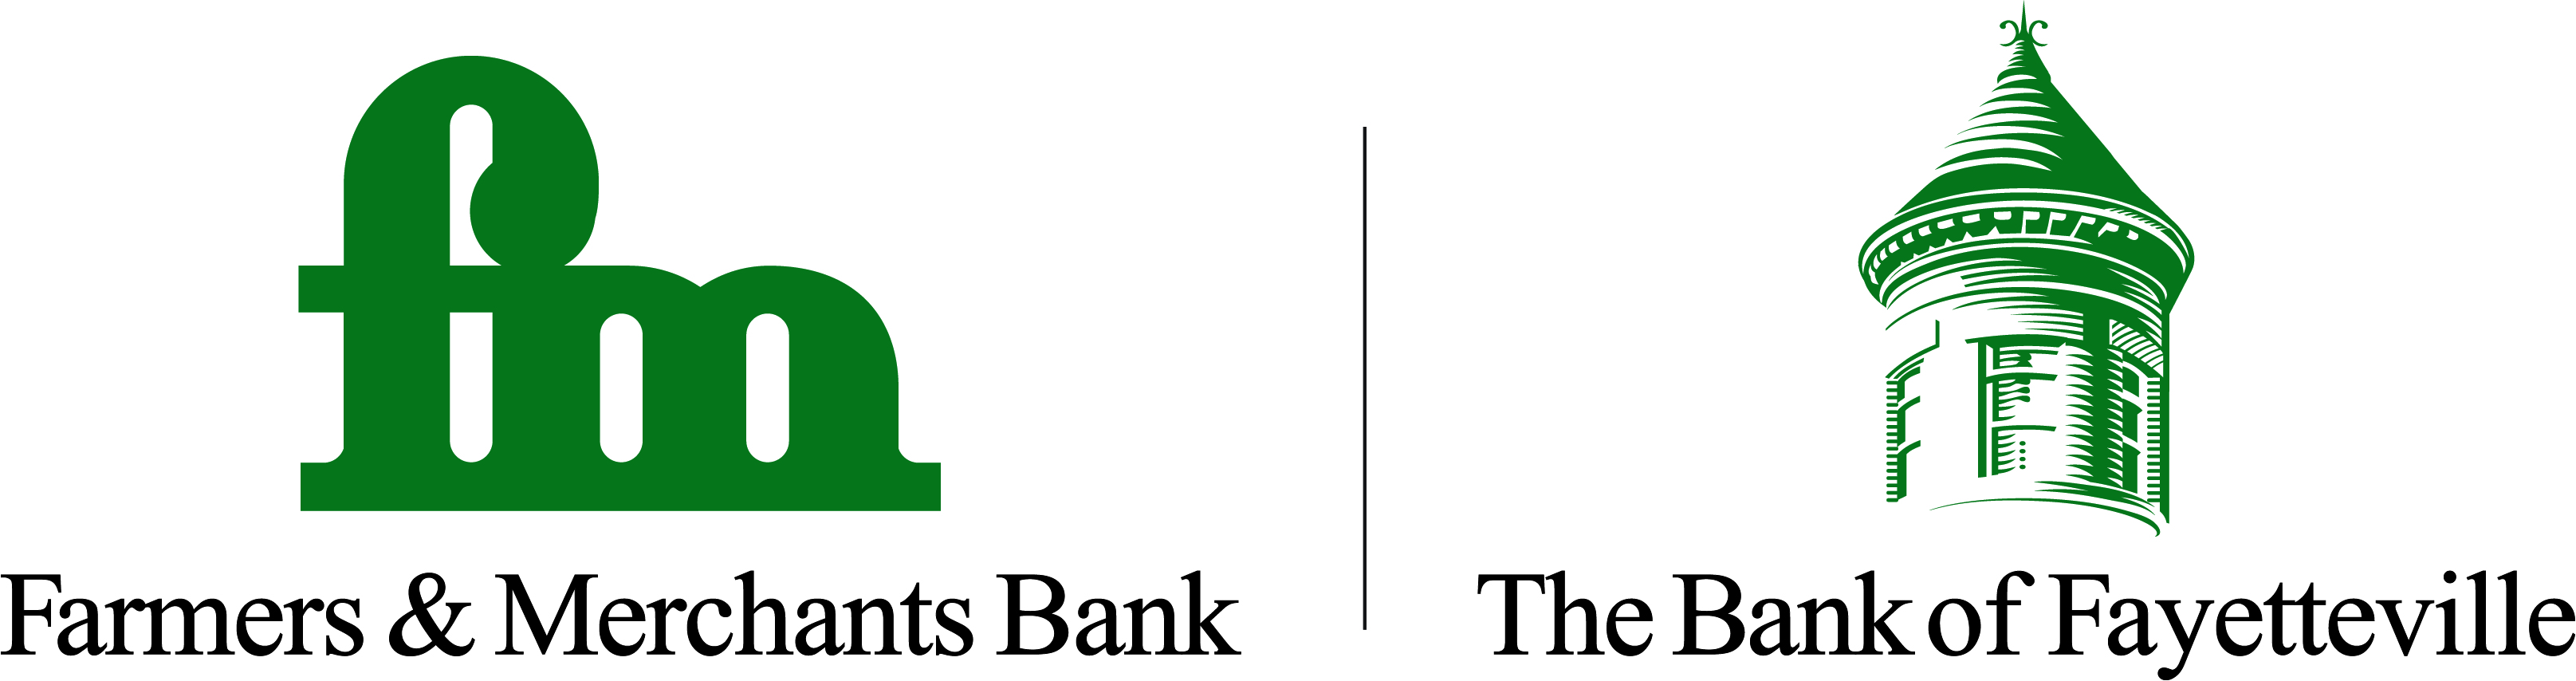 Farmers & Merchants Logo, The Bank of Fayetteville Logo